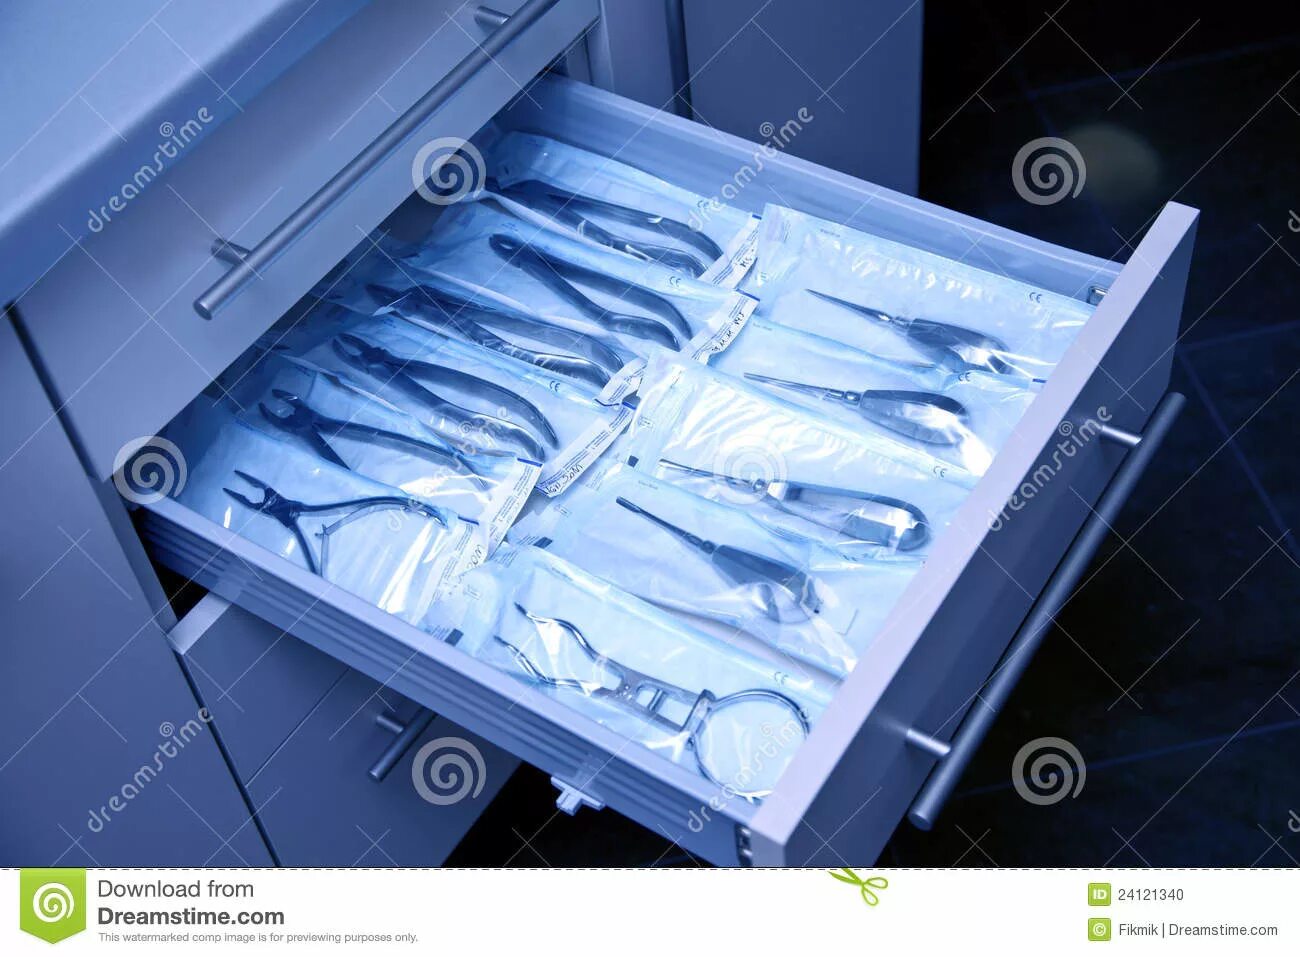 Шкаф для хранения стоматологических инструментов. Шкаф для хирургических инструментов. Хранение хирургических инструментов. Хирургический шкаф для хранения инструментов. Как хранить стерильные